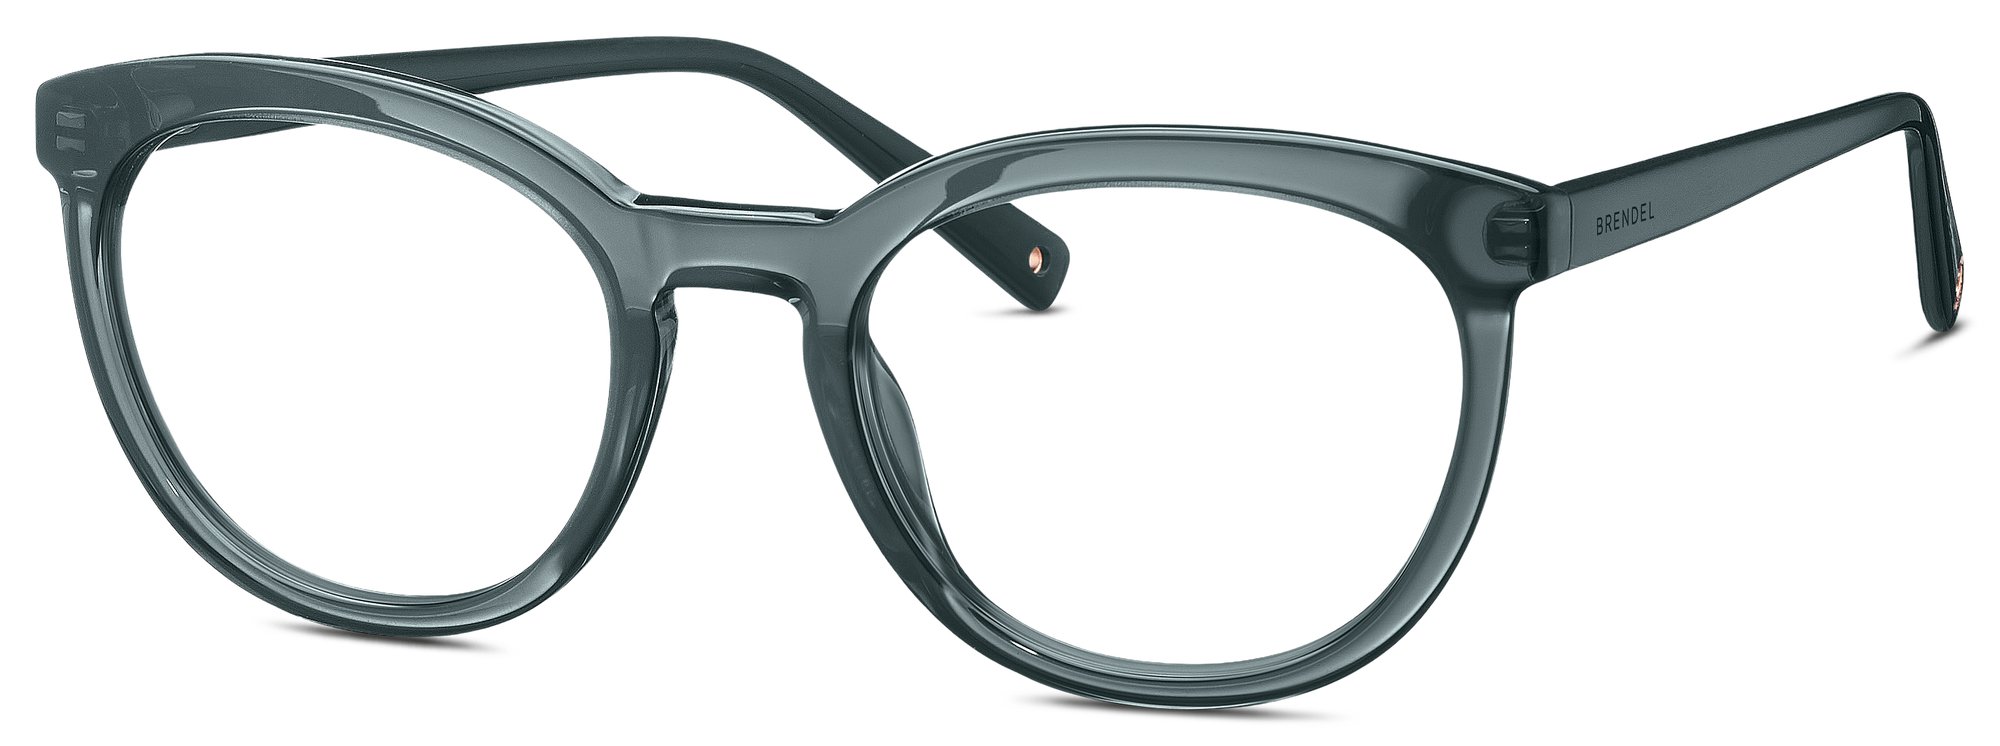 Das Bild zeigt die Korrektionsbrille 903185 30 von der Marke Brendel in grau transparent.